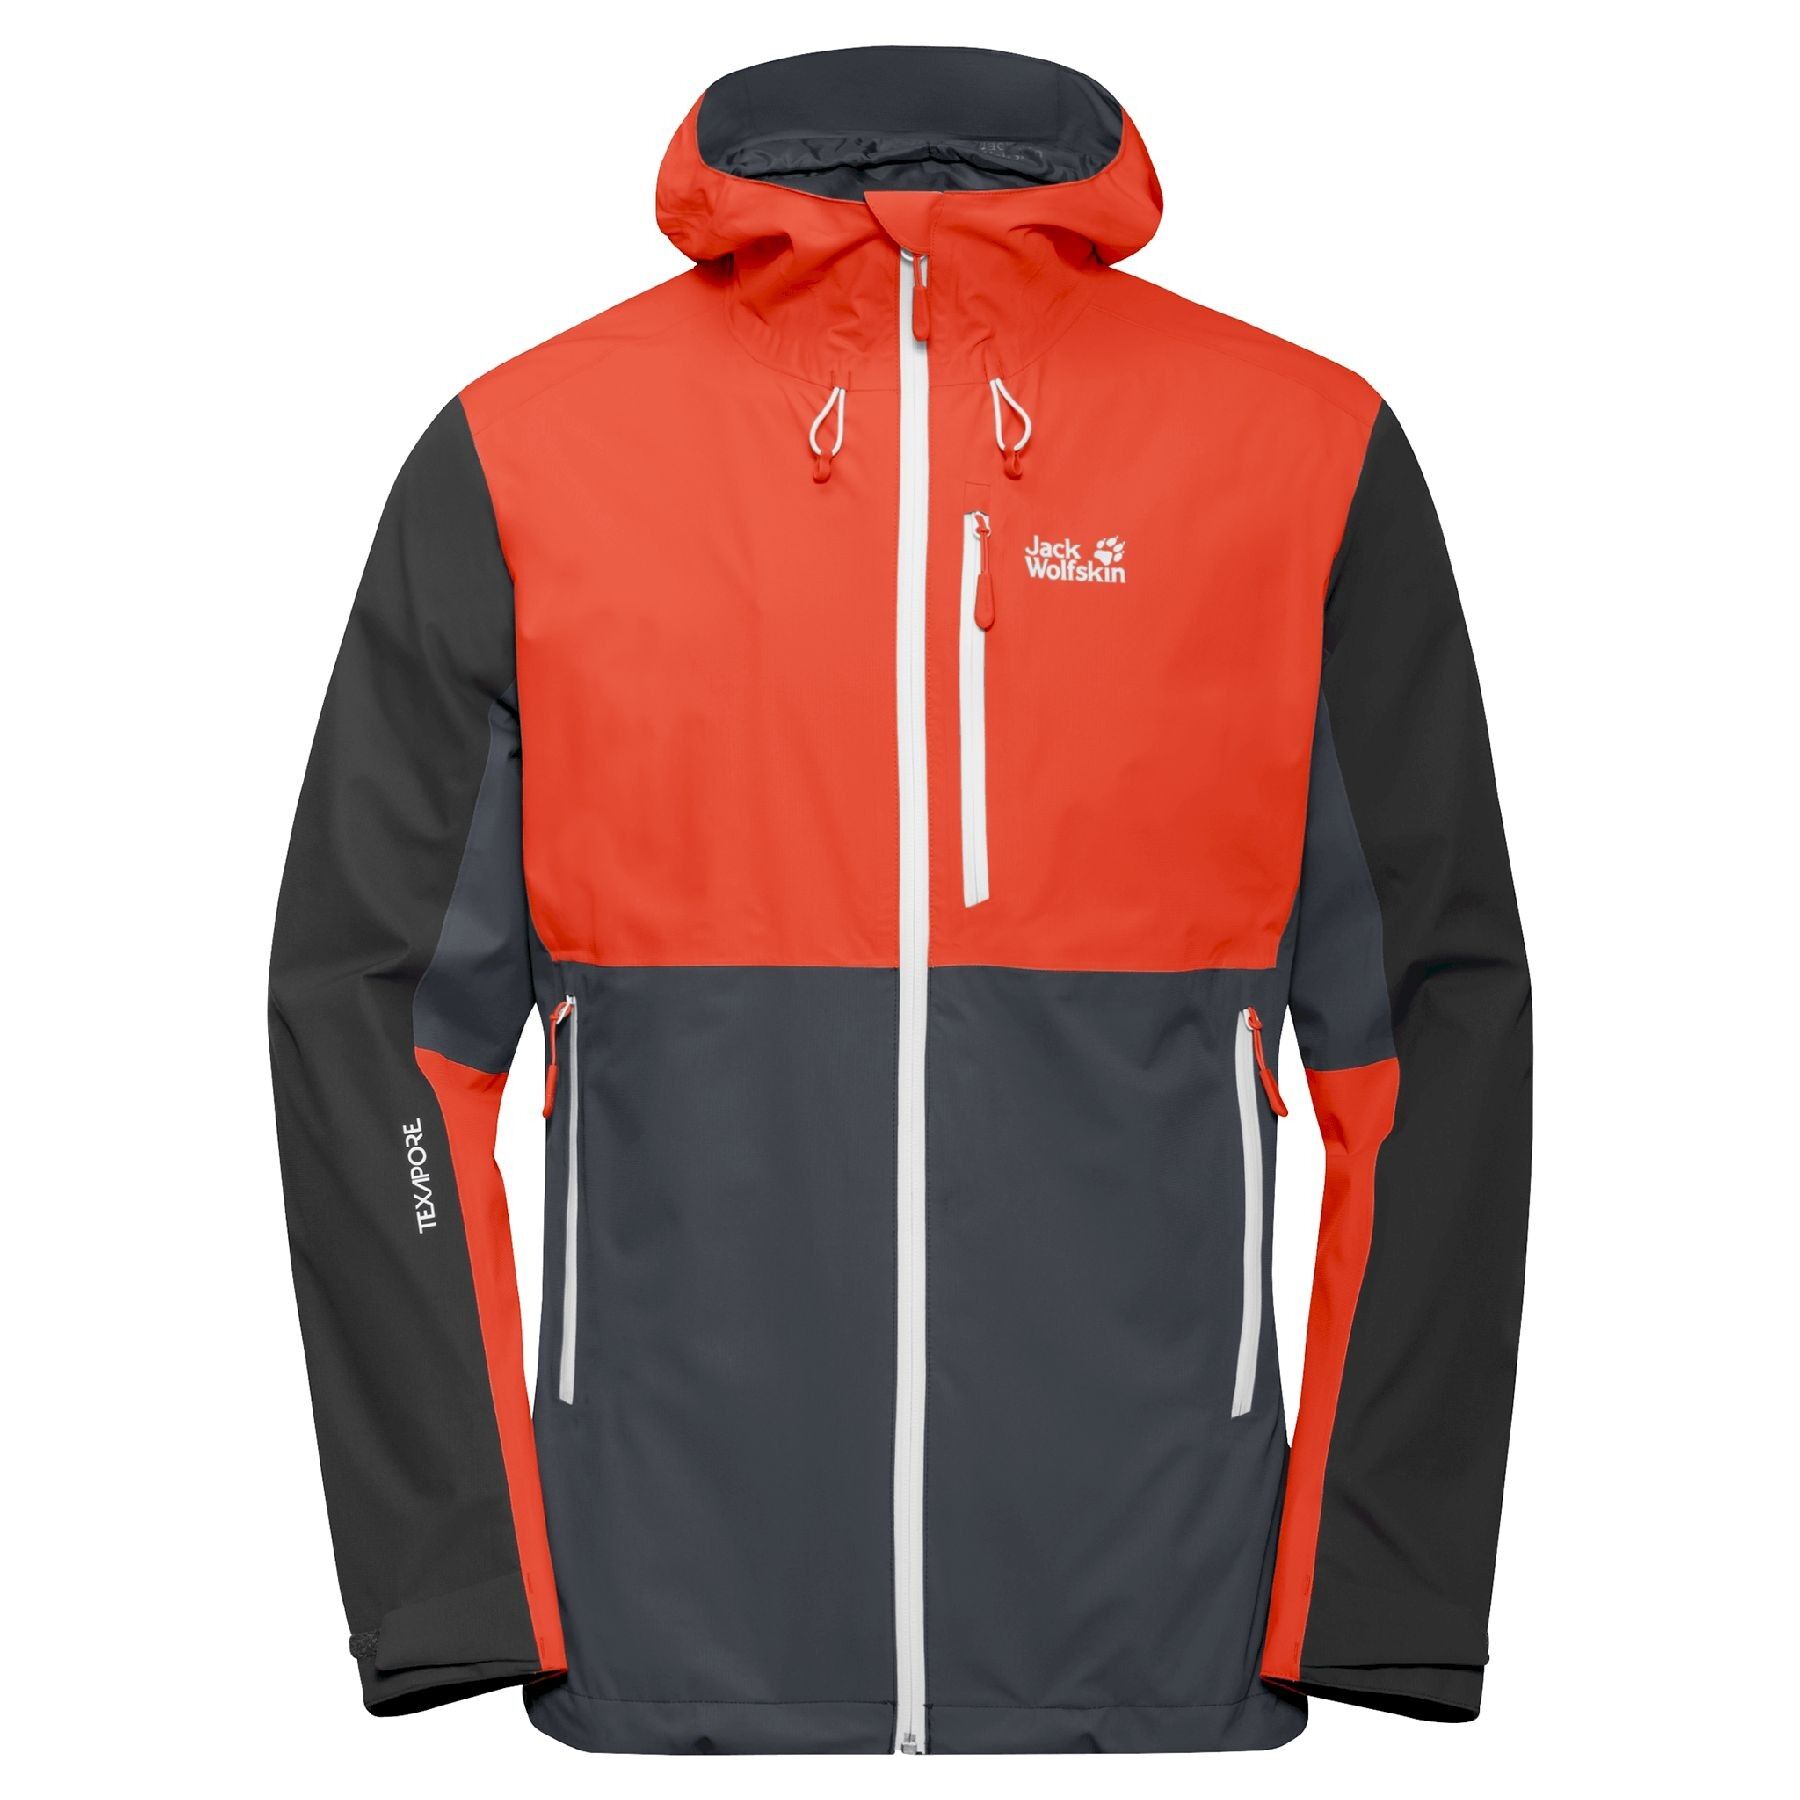 Jack Wolfskin Eagle Peak Jacket - Waterproof jacket - Men's